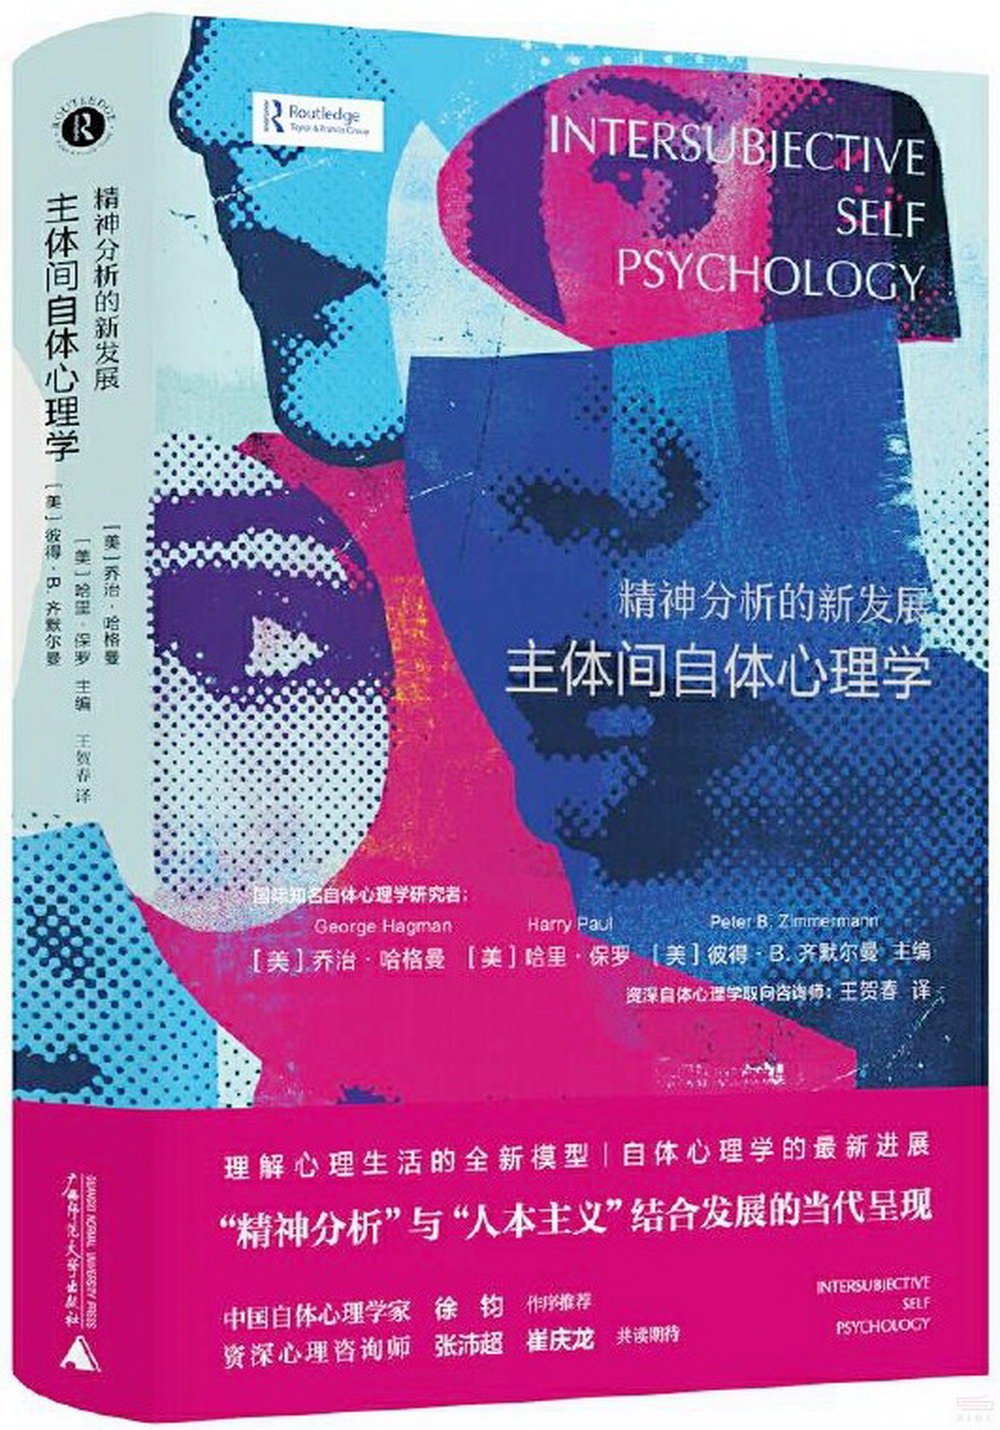 精神分析的新發展：主體間自體心理學